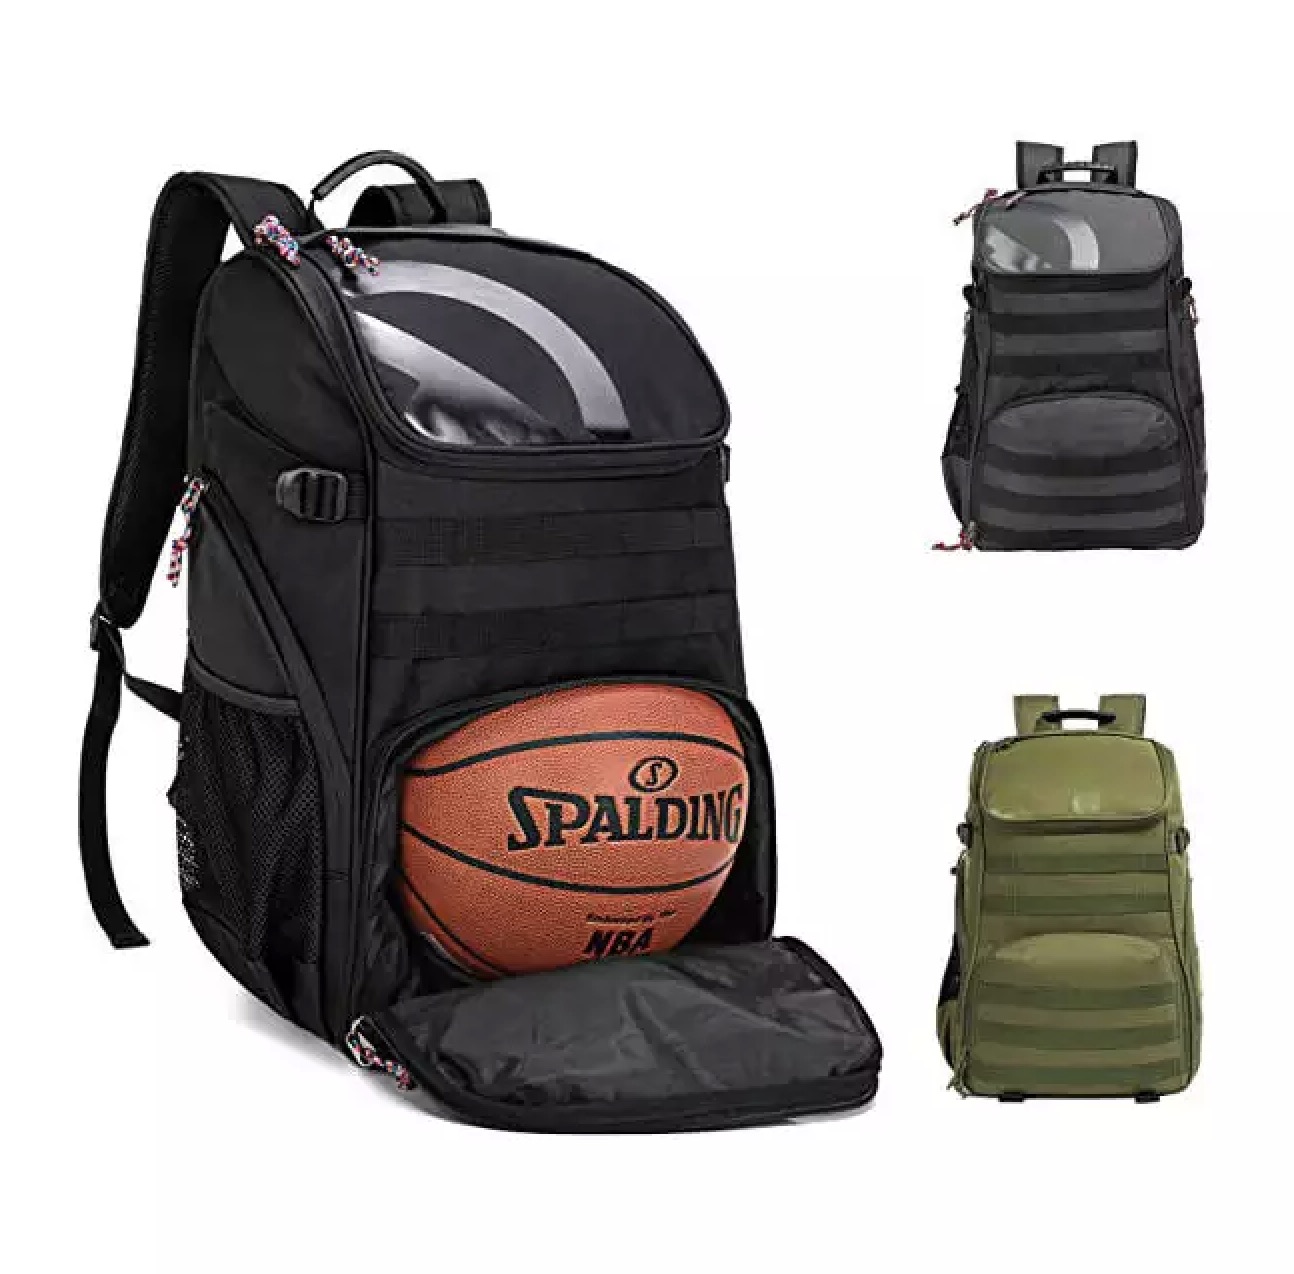 Доп бөлімі бар футбол рюкзактары Баскетболға арналған ашық спорт рюкзактары